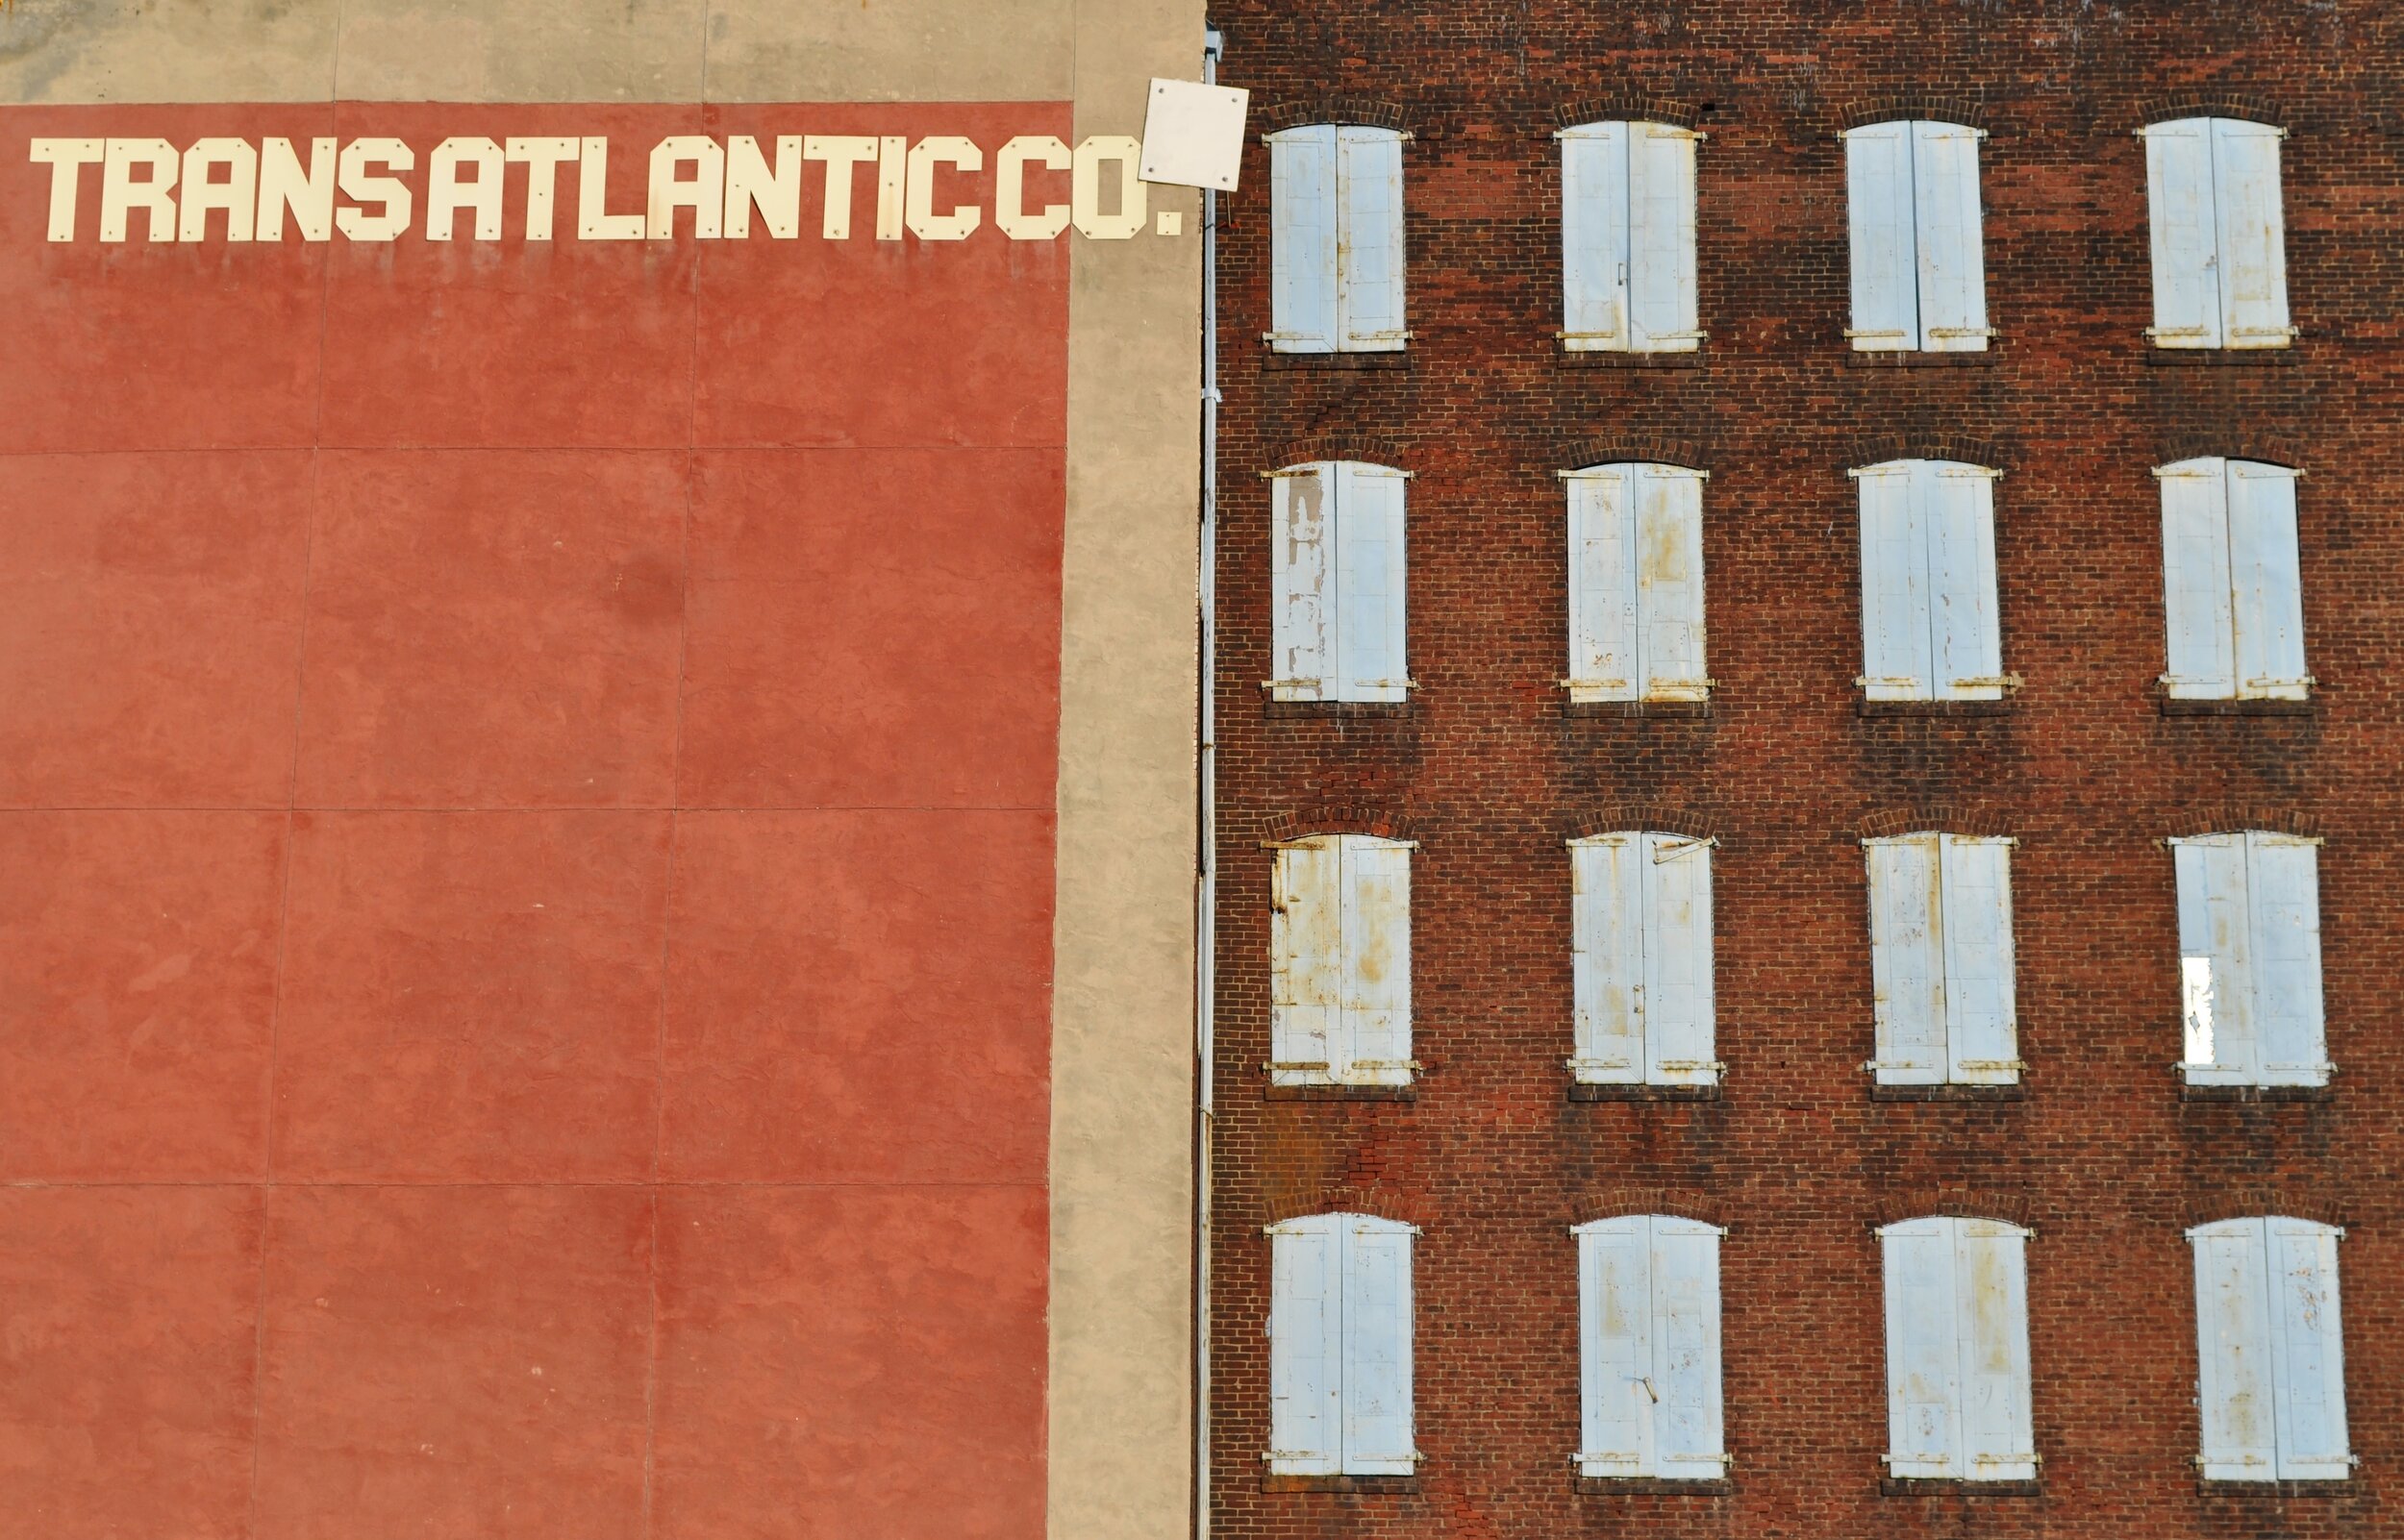 Transatlantic Co. - Philadelphia, Pennsylvania (2010)